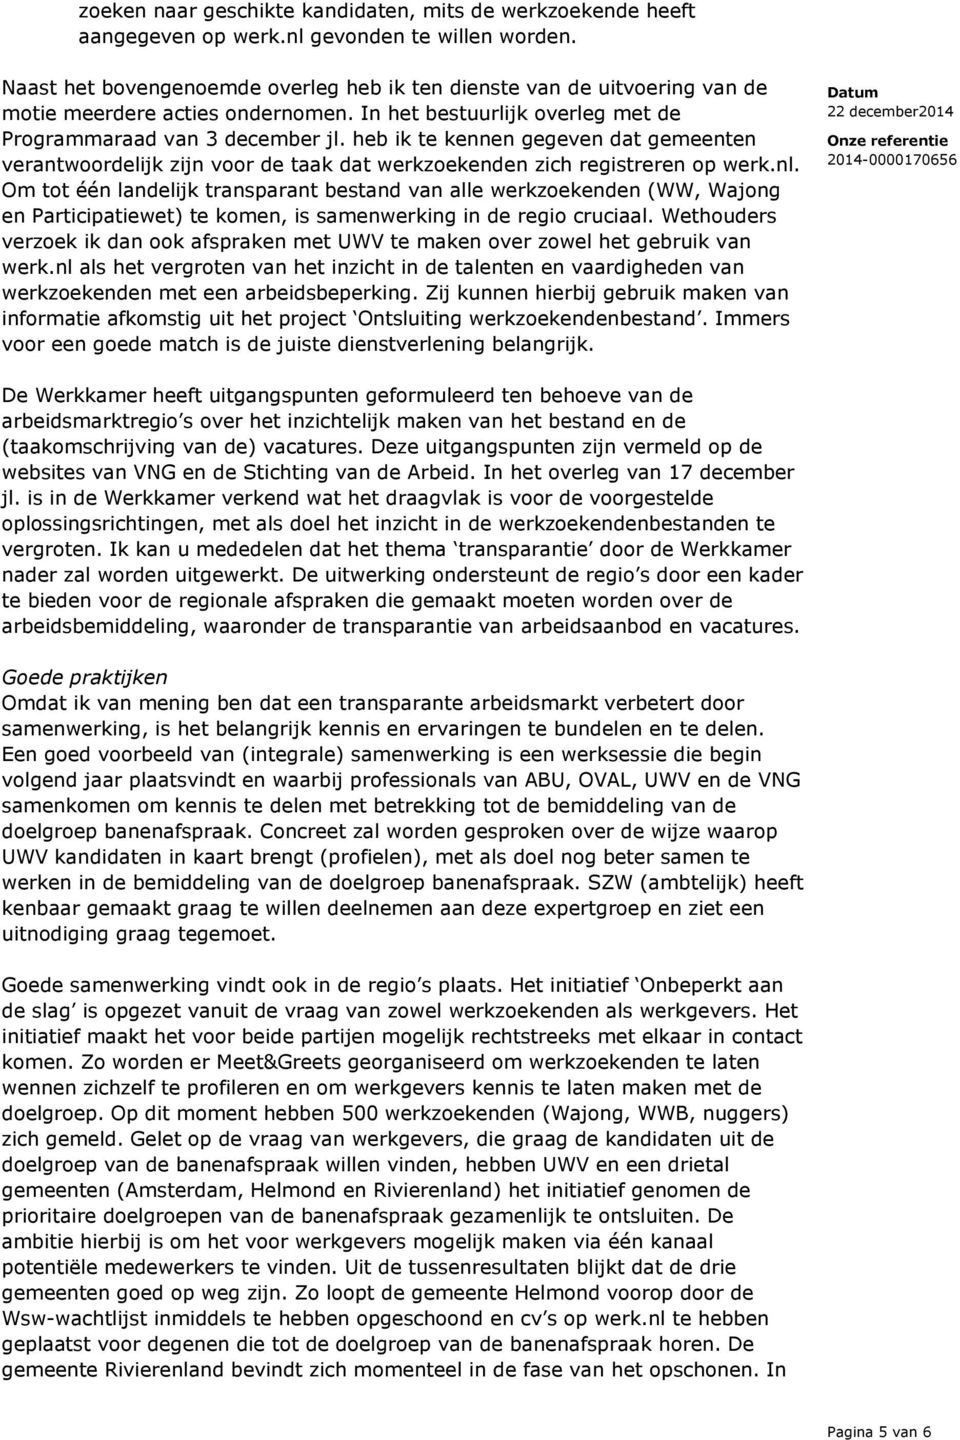 heb ik te kennen gegeven dat gemeenten verantwoordelijk zijn voor de taak dat werkzoekenden zich registreren op werk.nl.